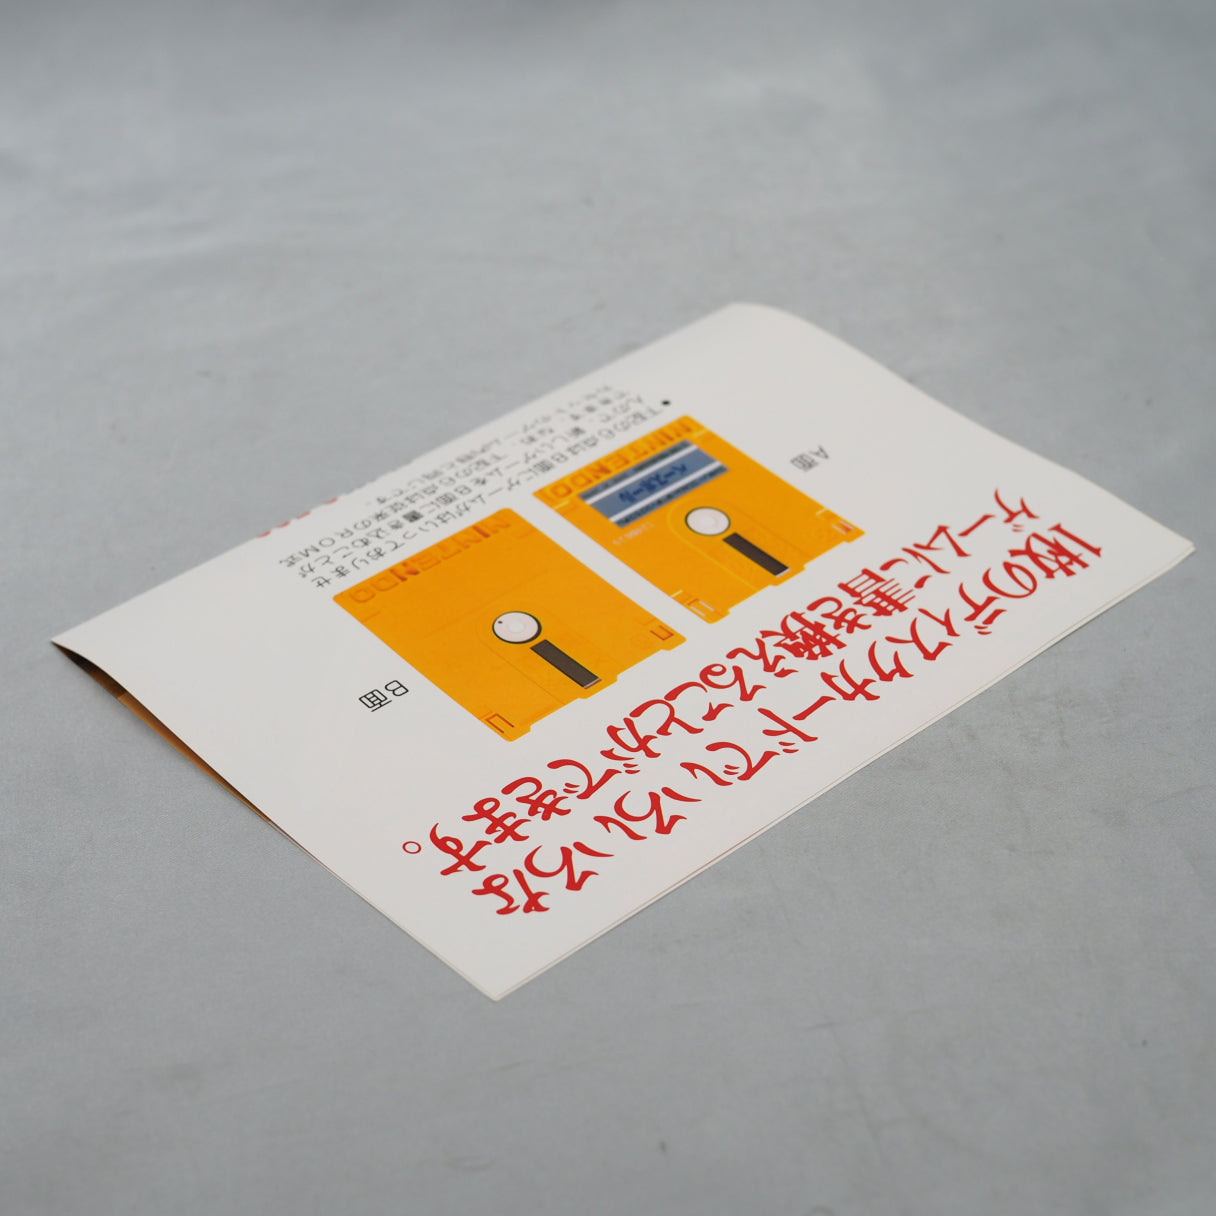 LEGEND OF ZELDA 1 Nintendo Famicom disk Catalog Flyer Leaflet Paper Poster